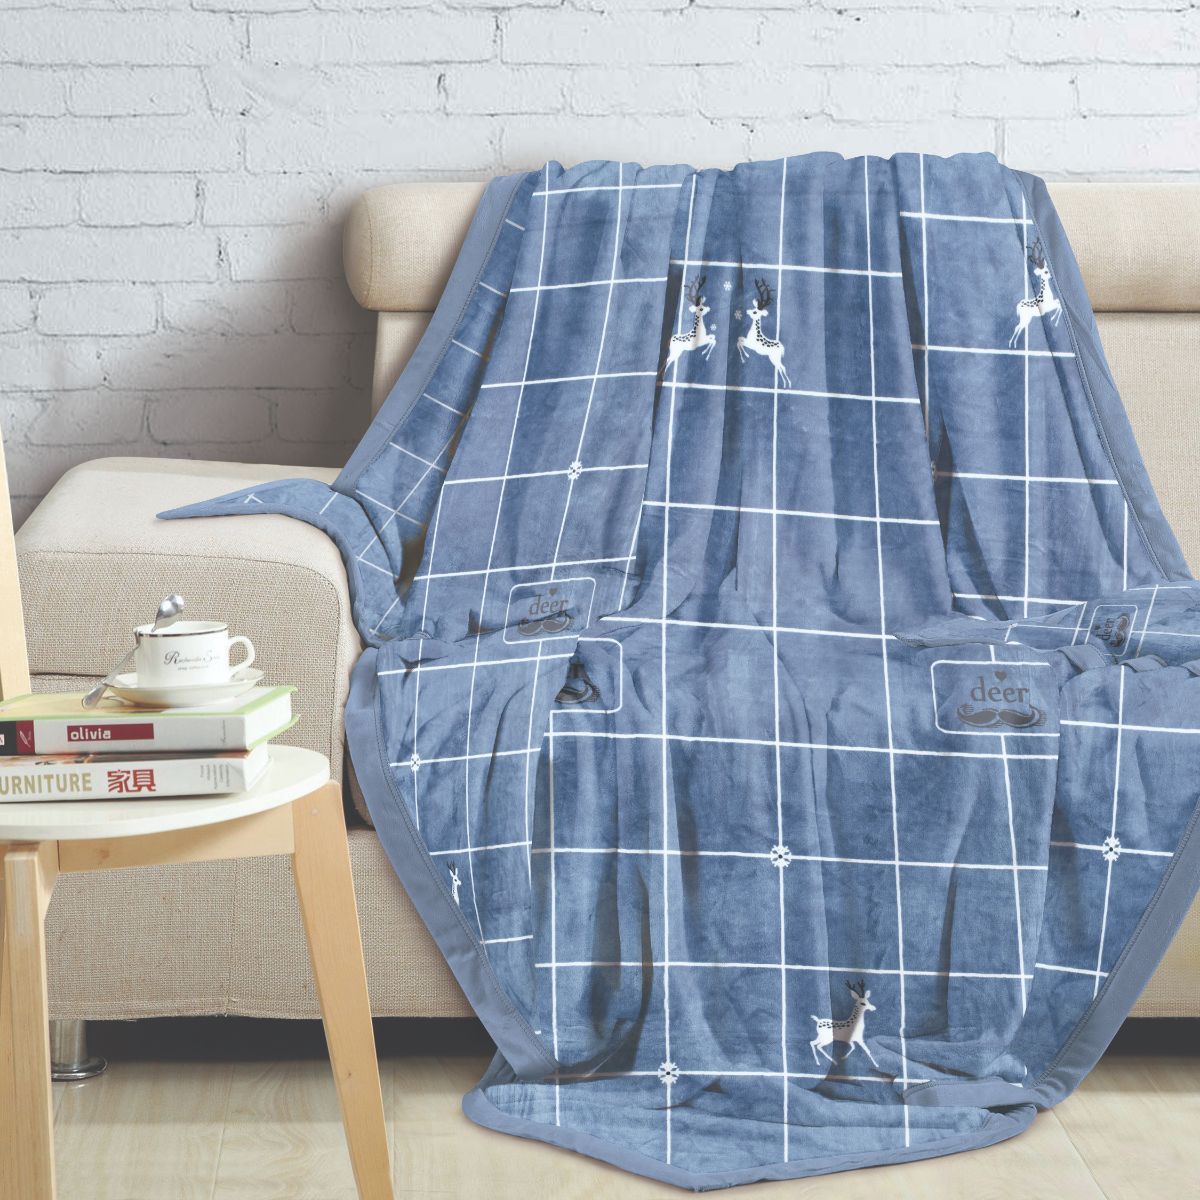 Malako Double Bed Blanket - Heavy Plush Blue Geometrical Printed Blanket